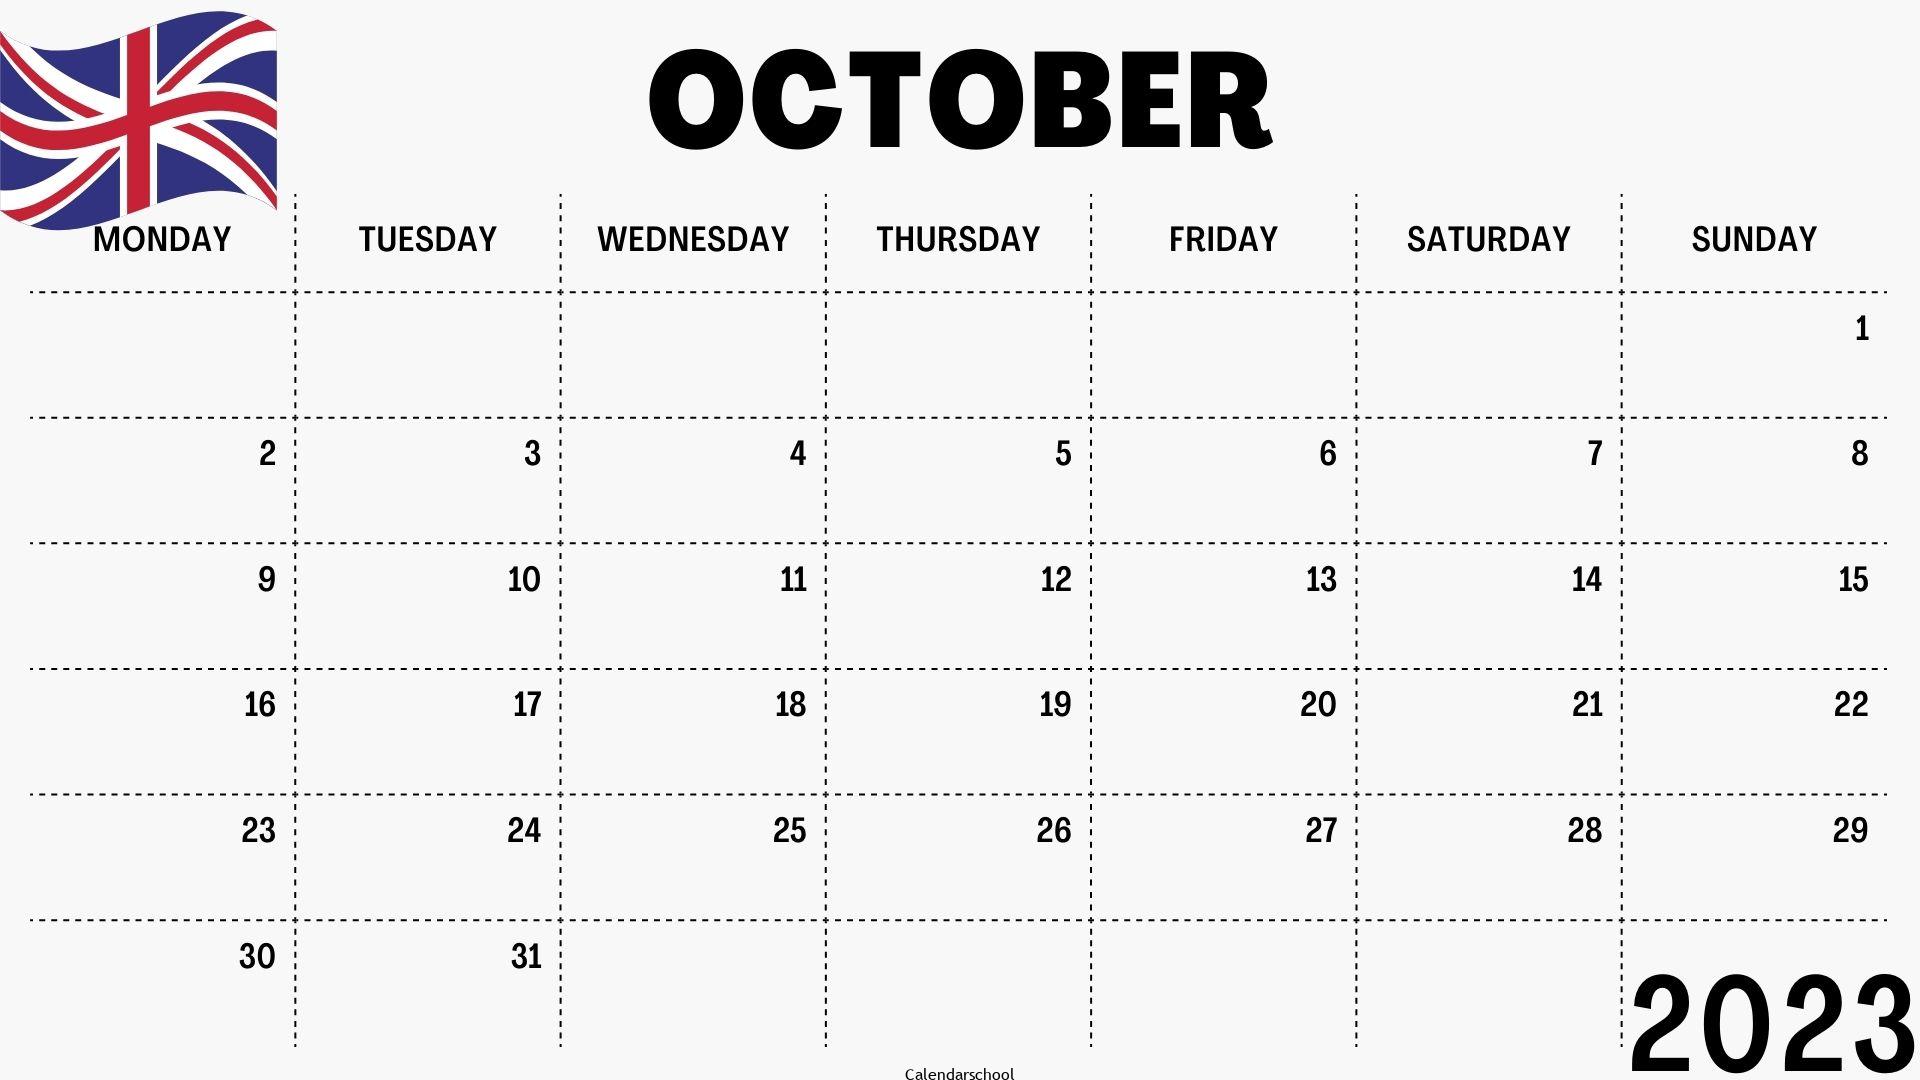 October 2023 Calendar with Holidays UK